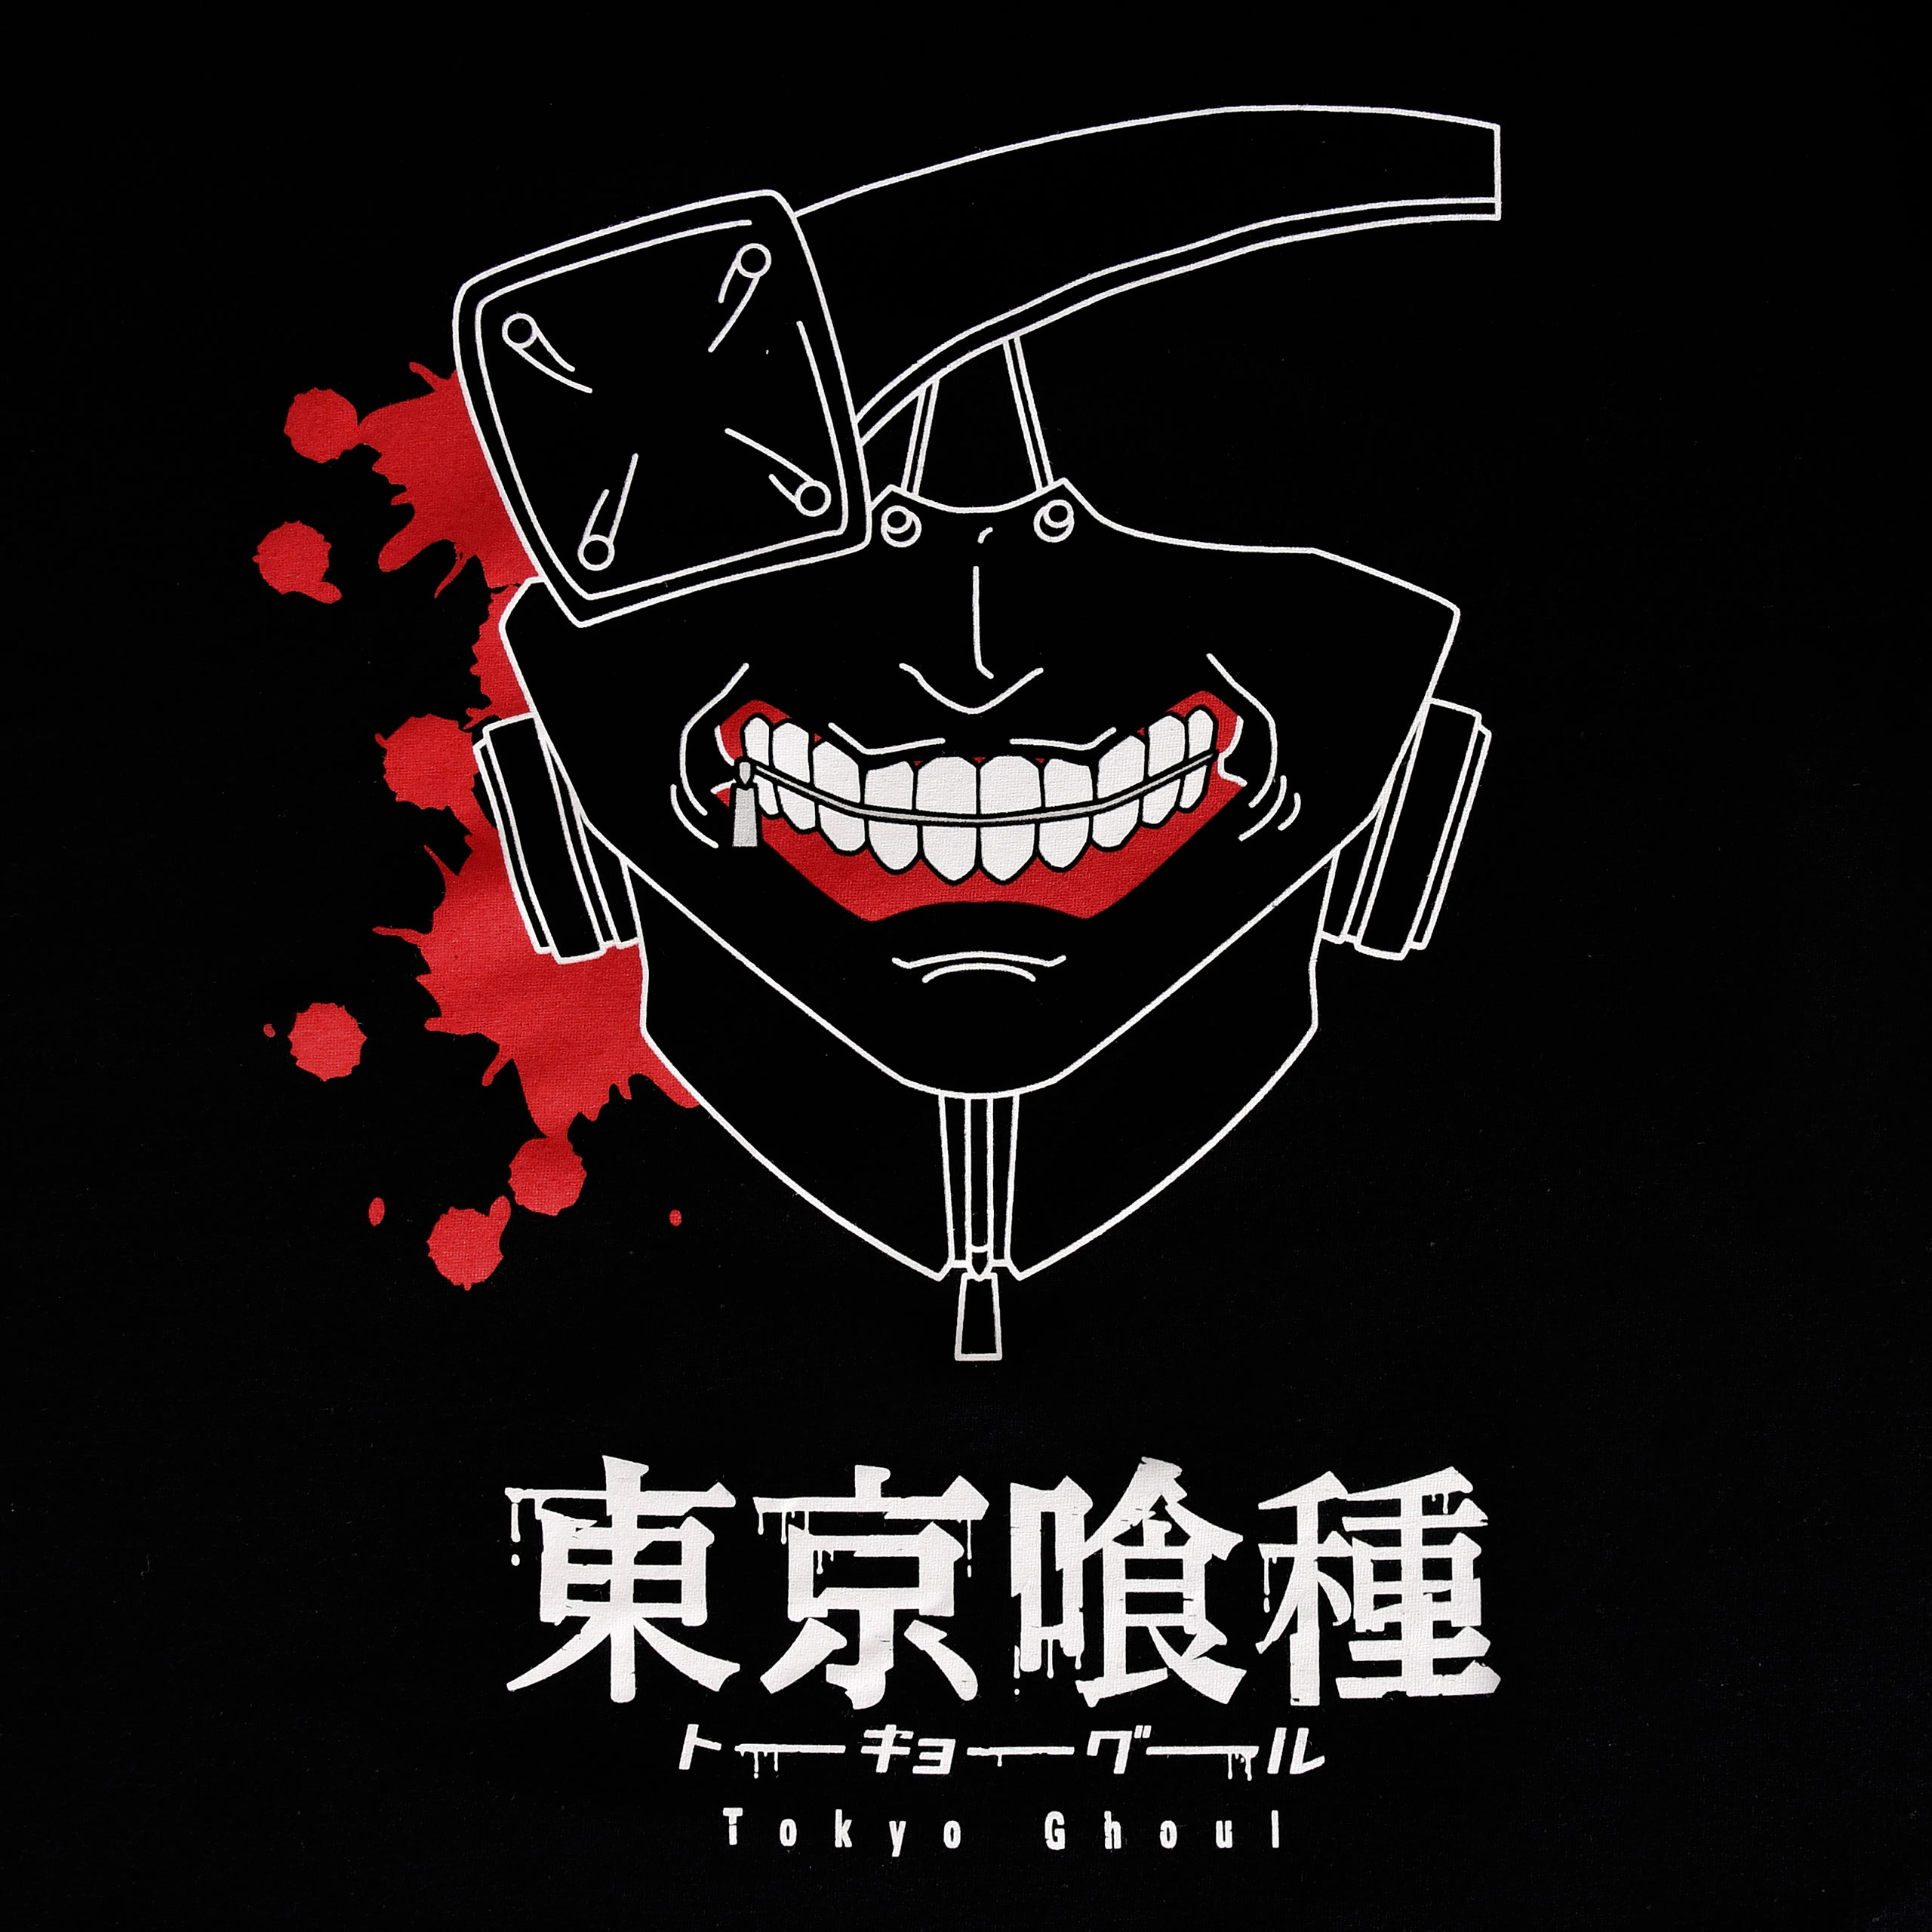 Tokyo Ghoul - Blood Filled Mask T-Shirt Black